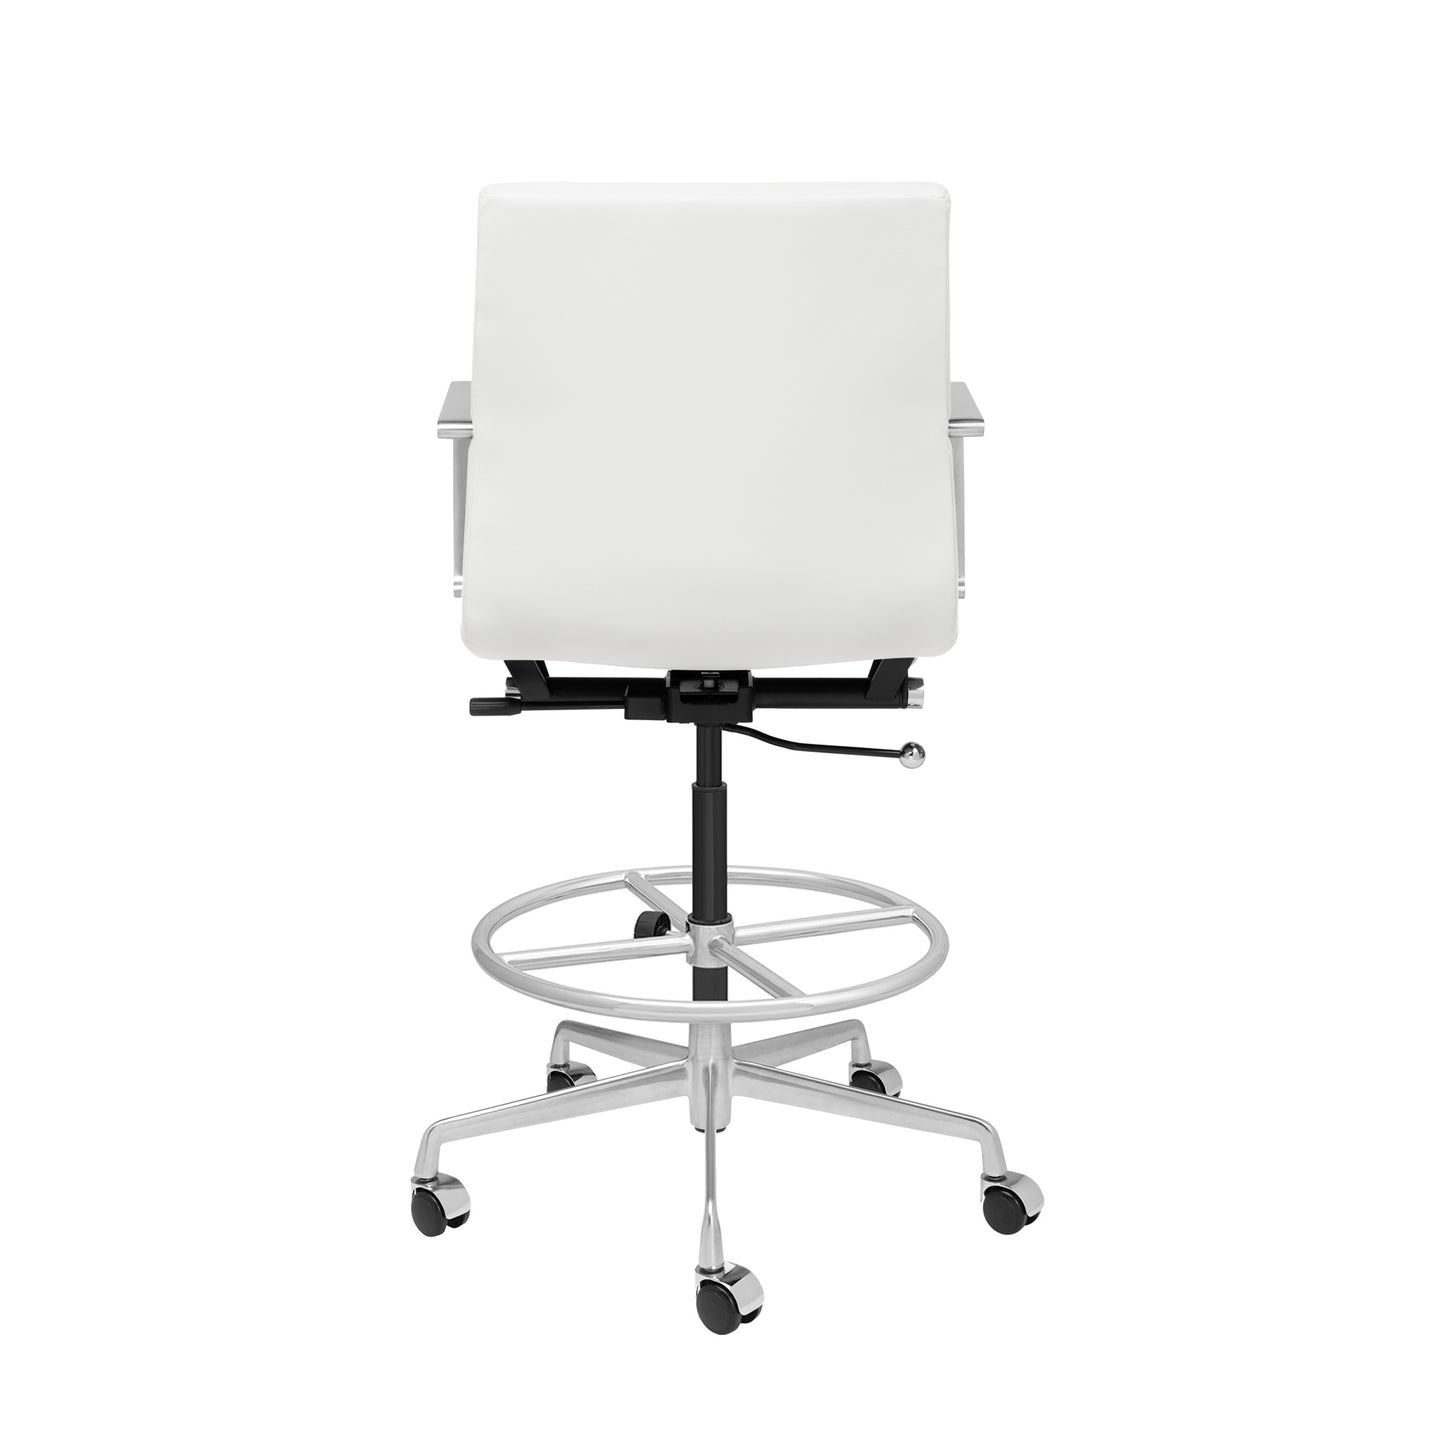 SHIPS MAY 17TH - SOHO II Ribbed Drafting Chair (White)